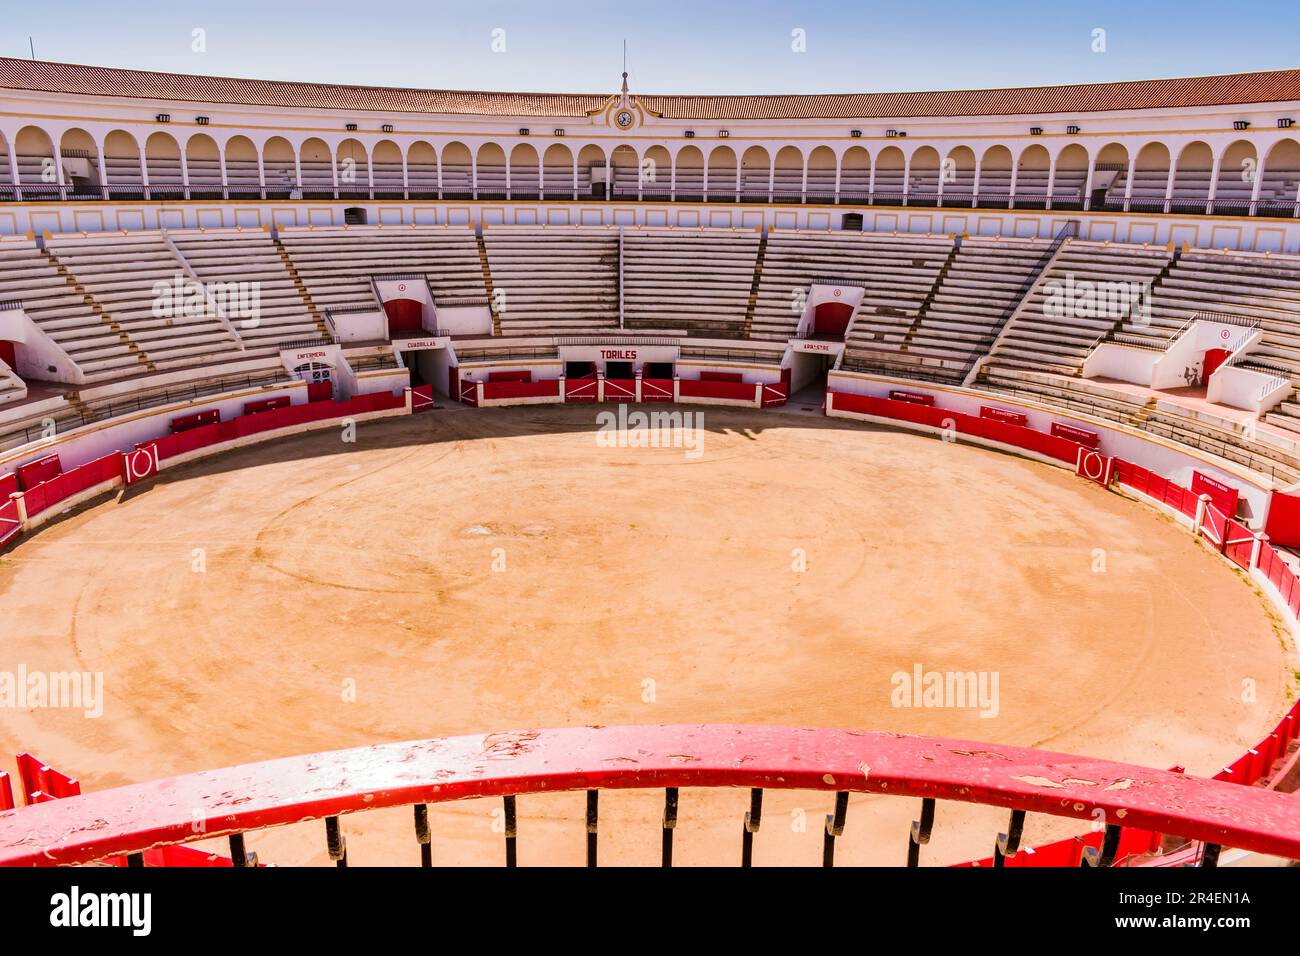 Arena oder Ruedo, ein Feld mit dicht gepacktem zerdrücktem Felsen, Albero, das die Bühne für den Stierkampf ist. Die Stierkampfarena von Melilla, auch bekannt als Moschee Stockfoto